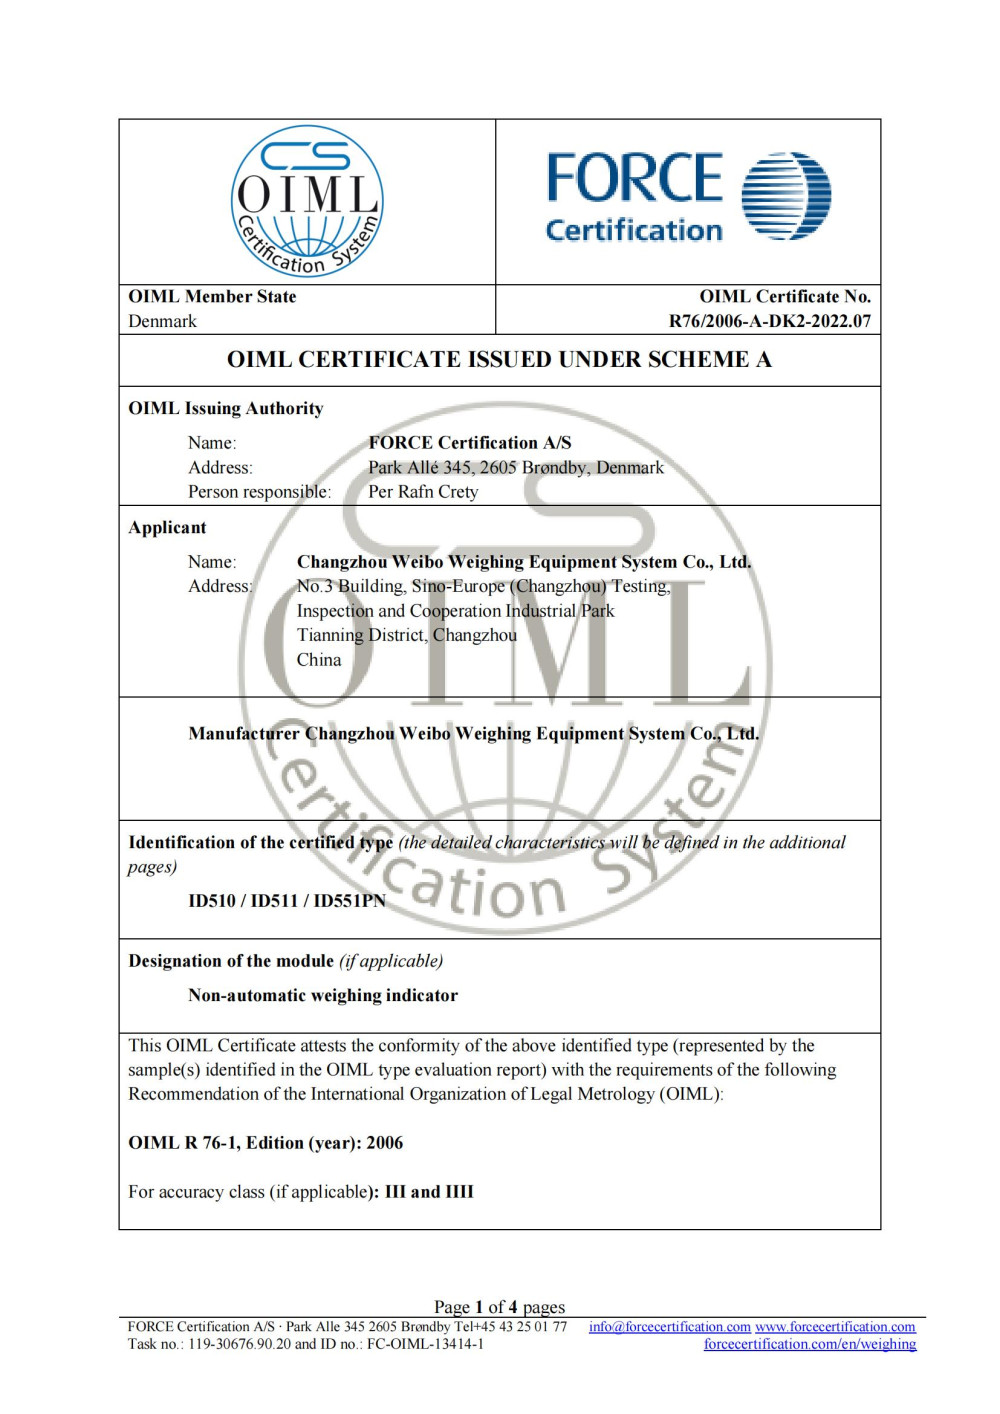 OIML-Certificate-R76